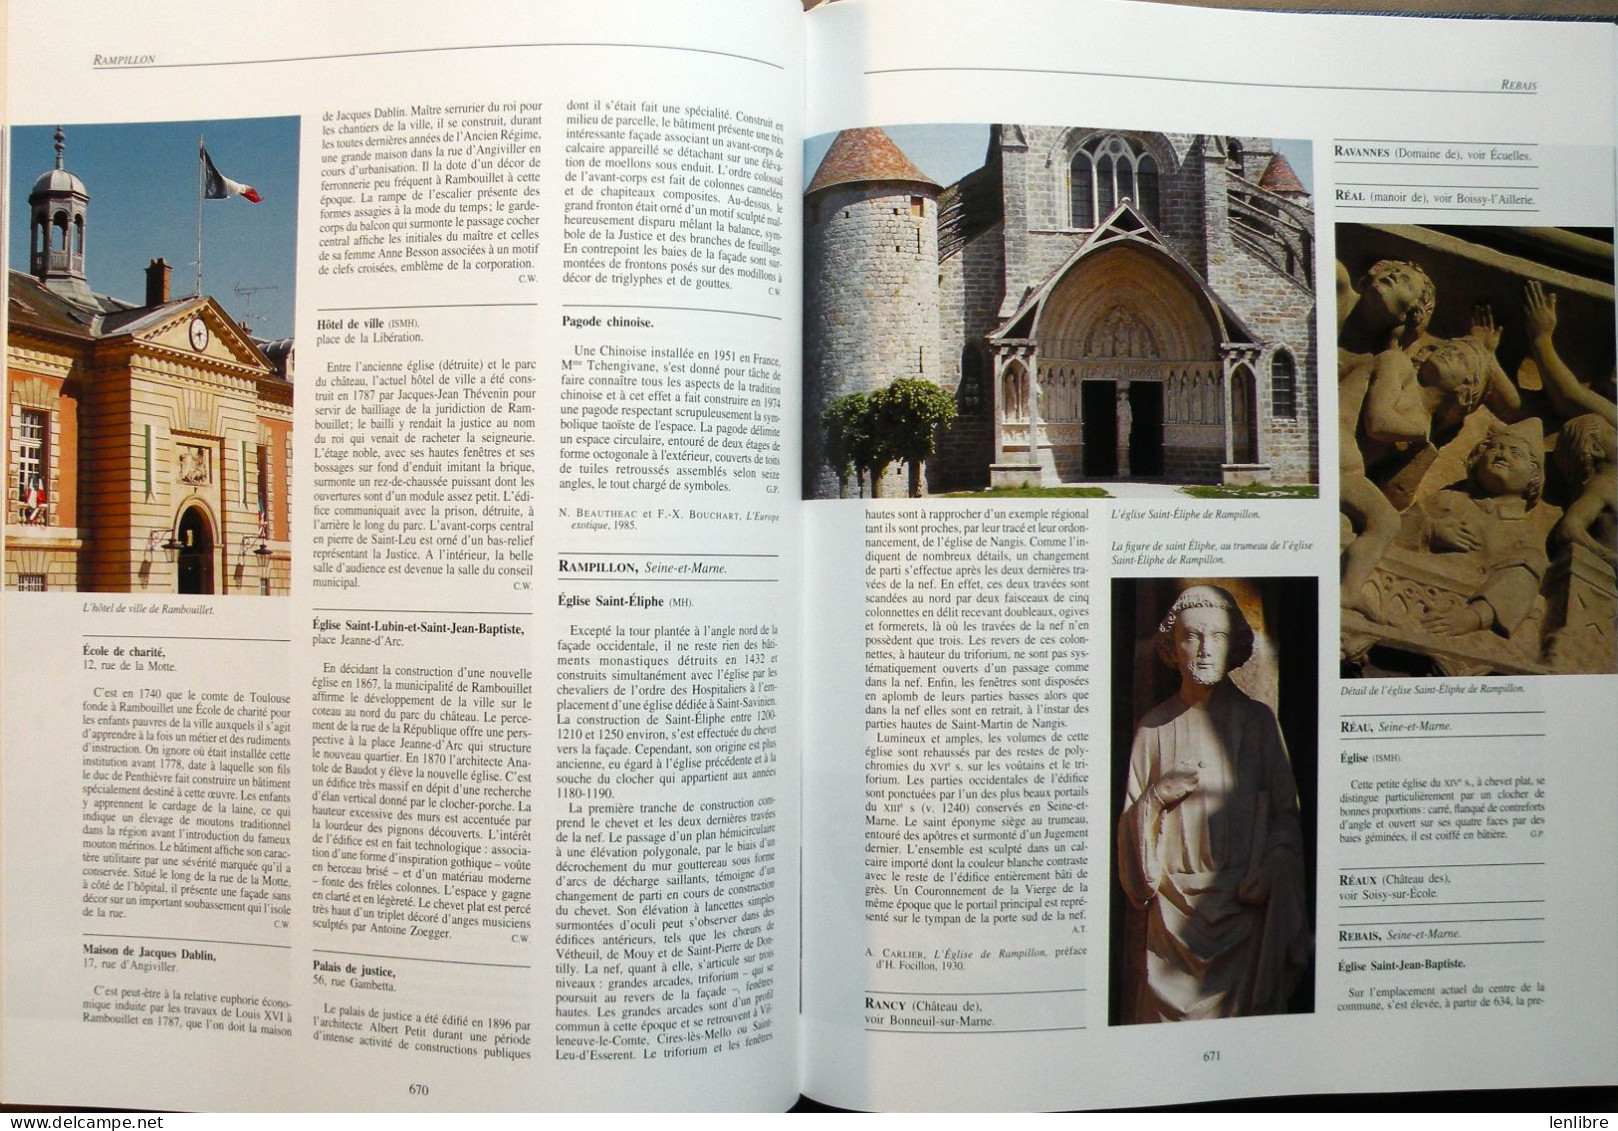 DICTIONNAIRE des MONUMENTS d’Ile-de-France. Ouvrage collectif. Ed. HERVAS. 1999.